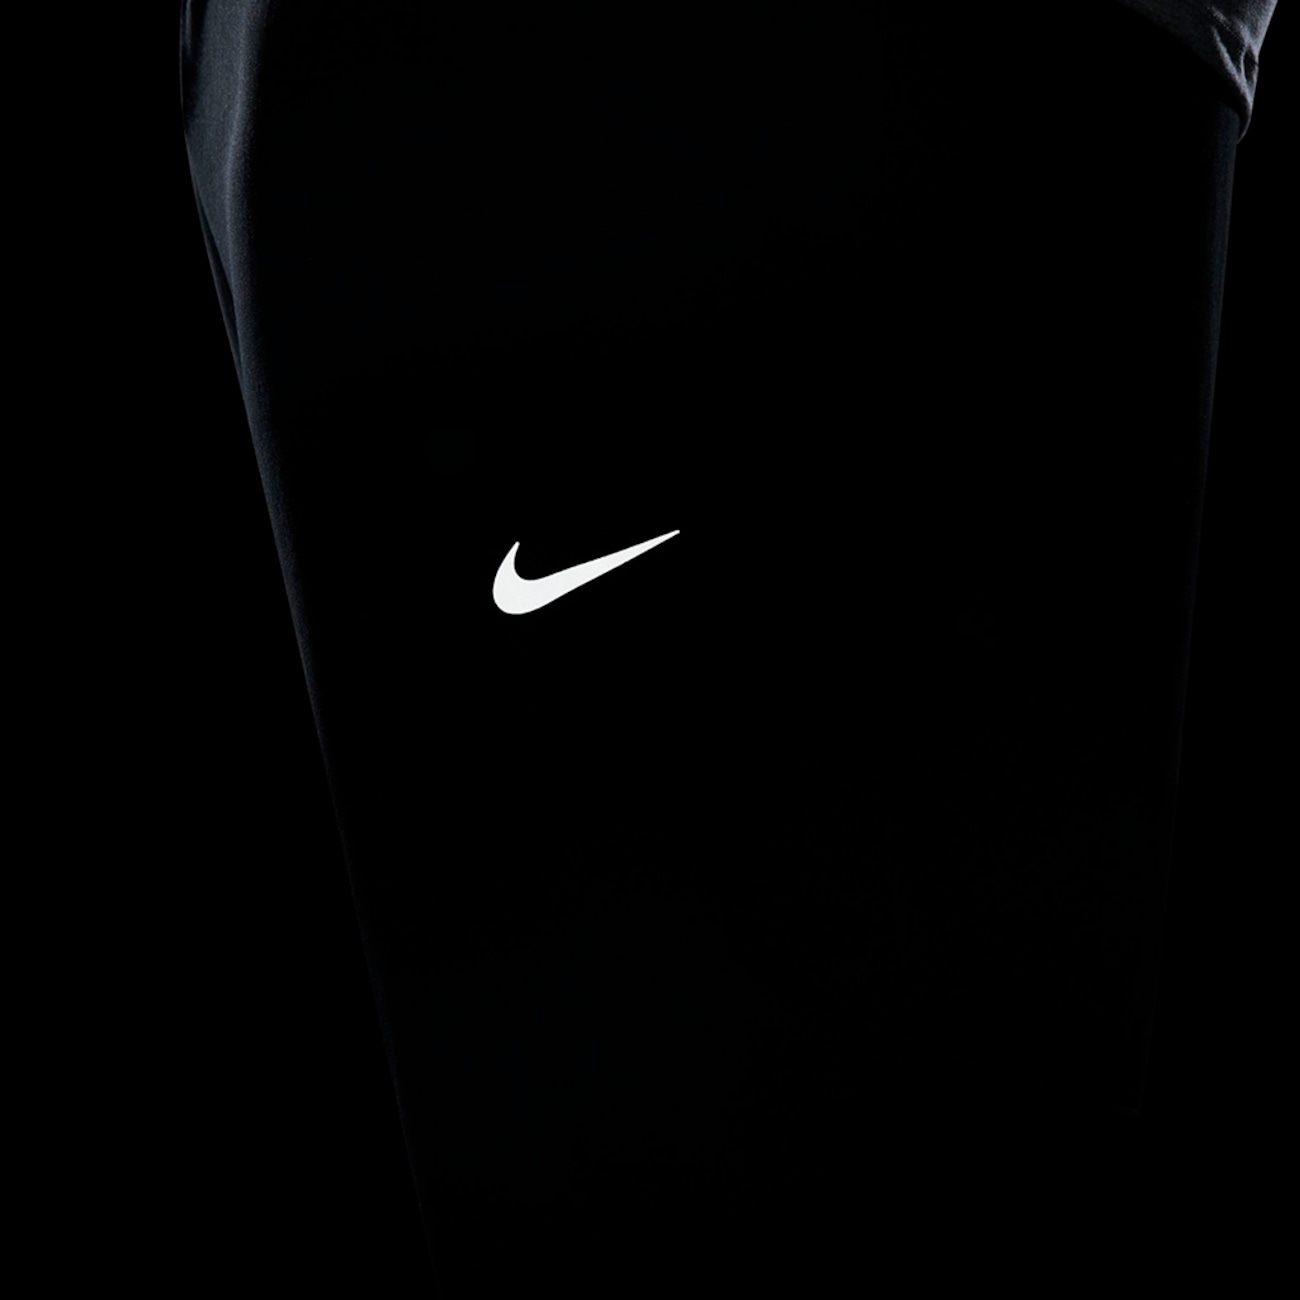 Calça Nike Dri-FIT Challenger Masculina - Foto 15